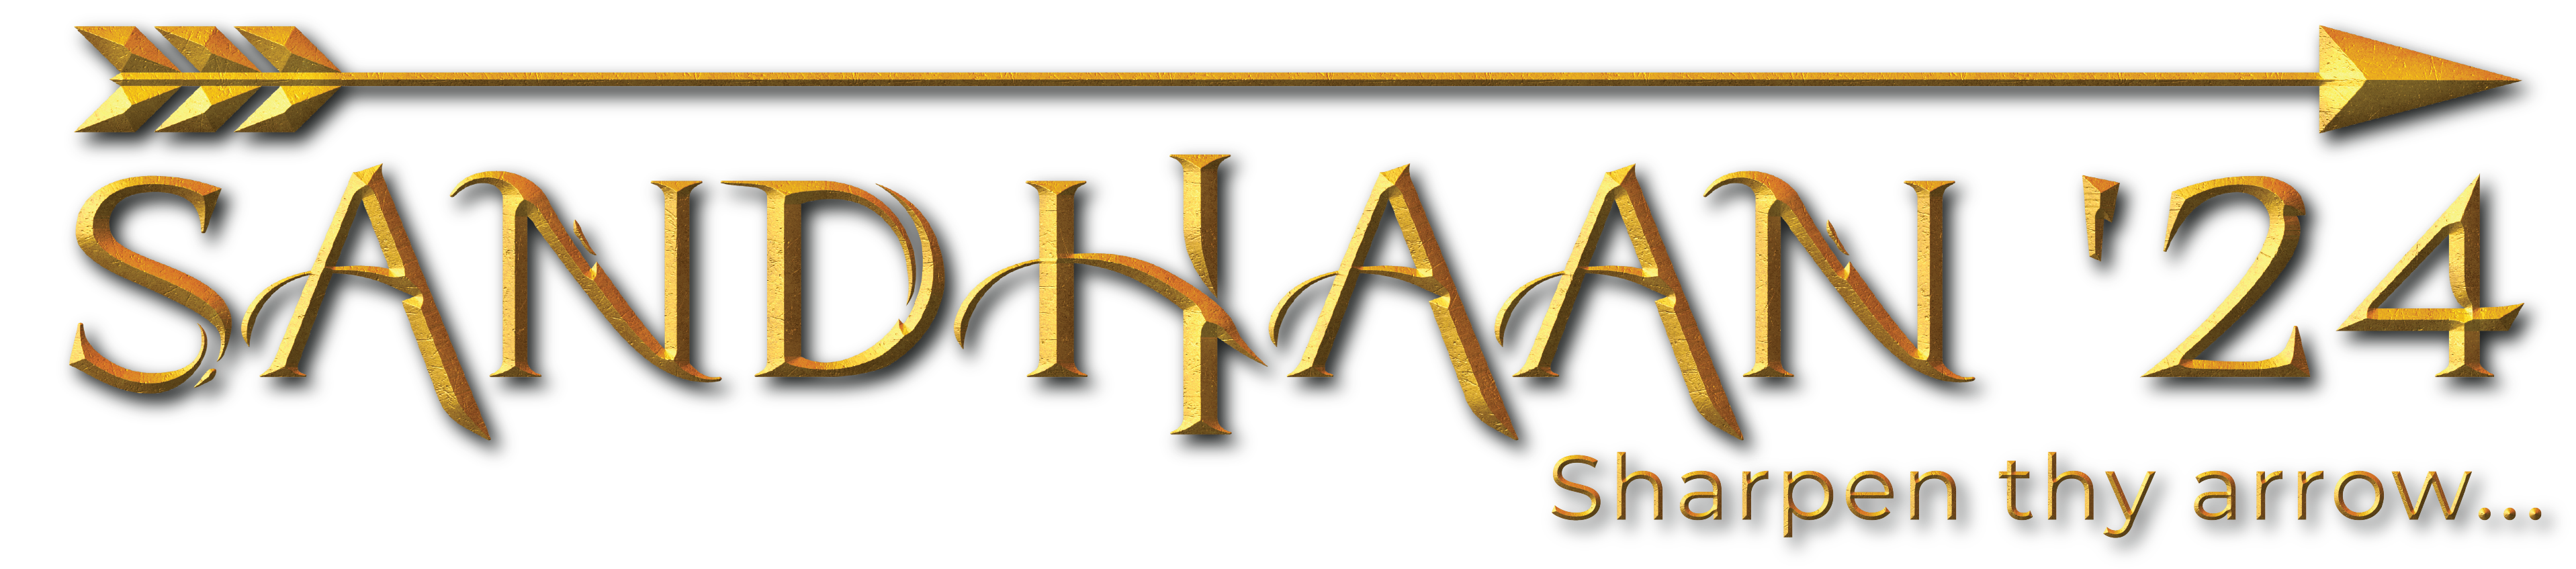 Sandhaan logo